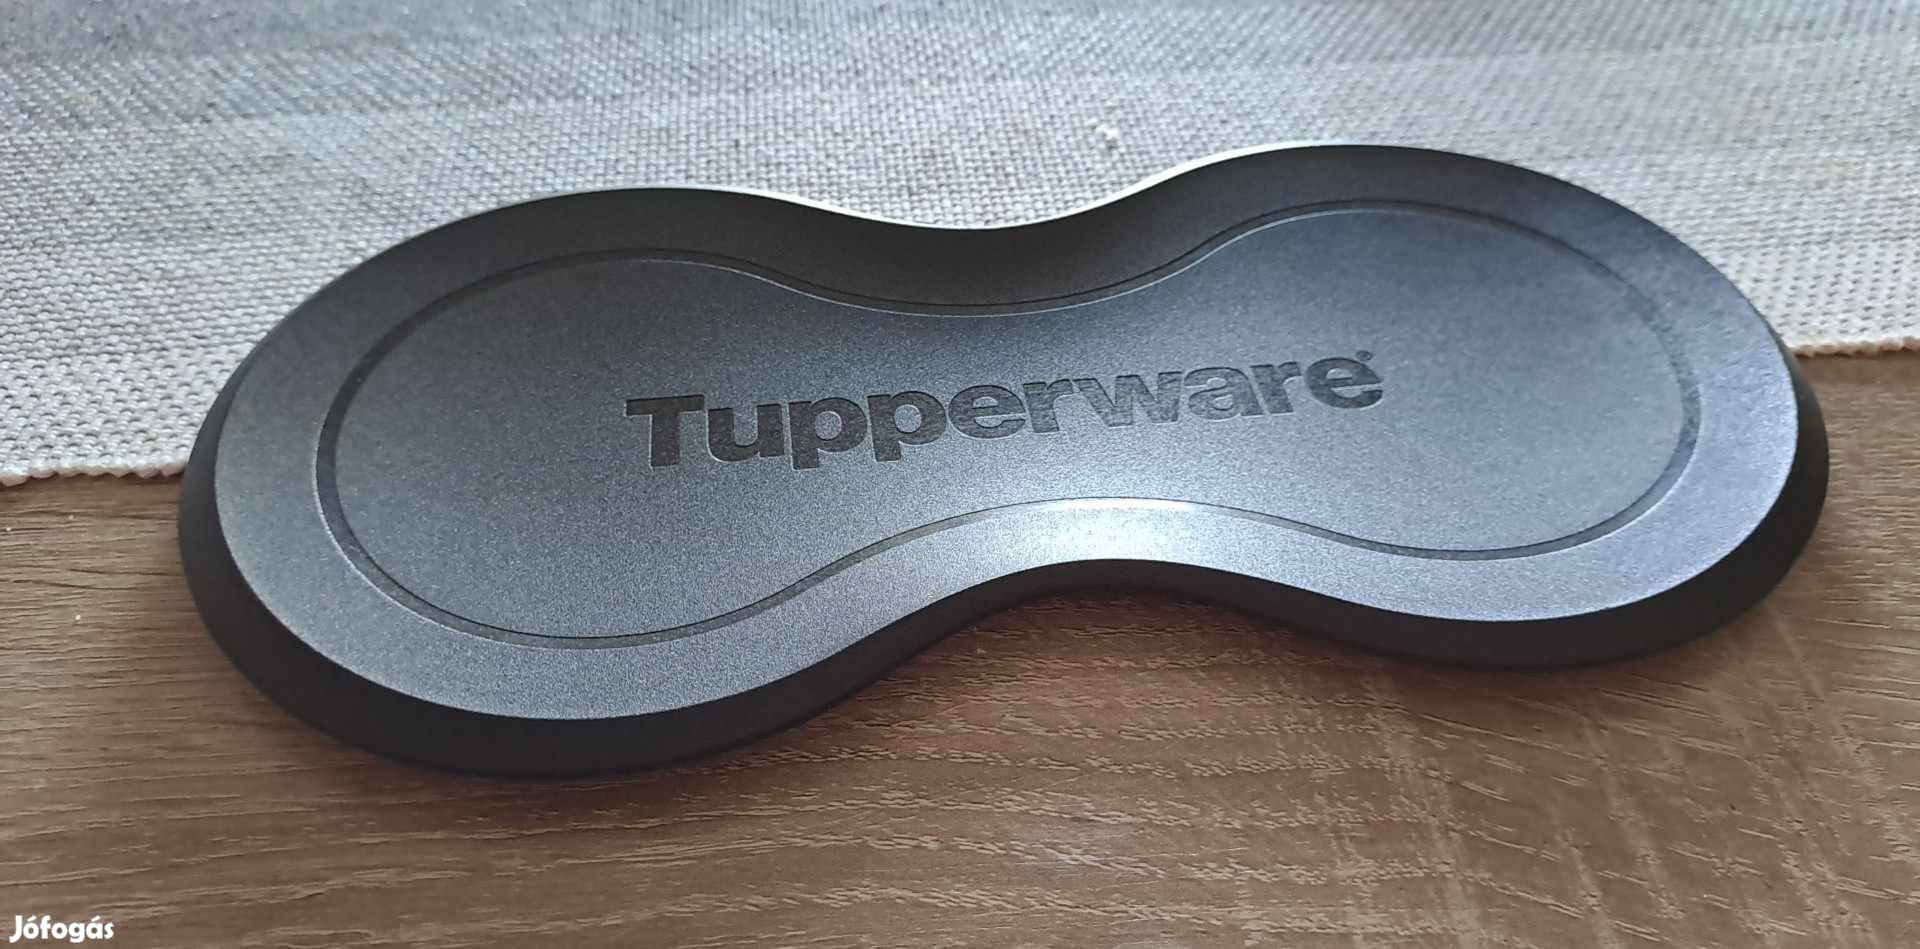 Tupperware kanálpihentető